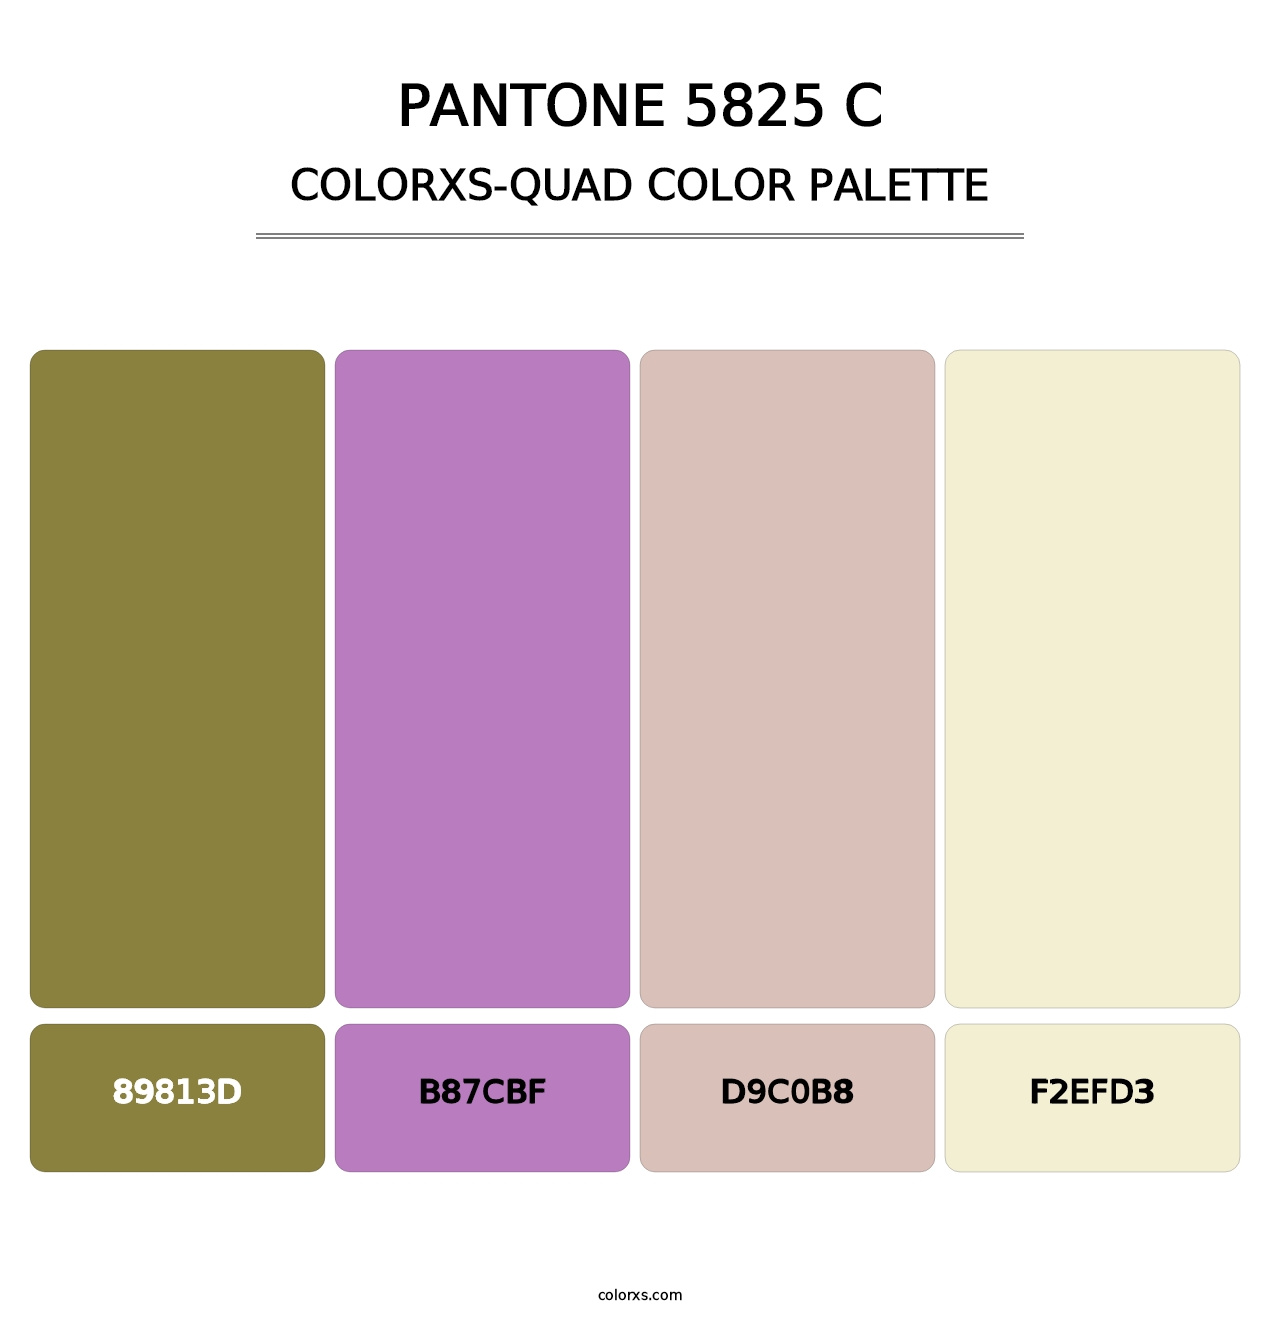 PANTONE 5825 C - Colorxs Quad Palette